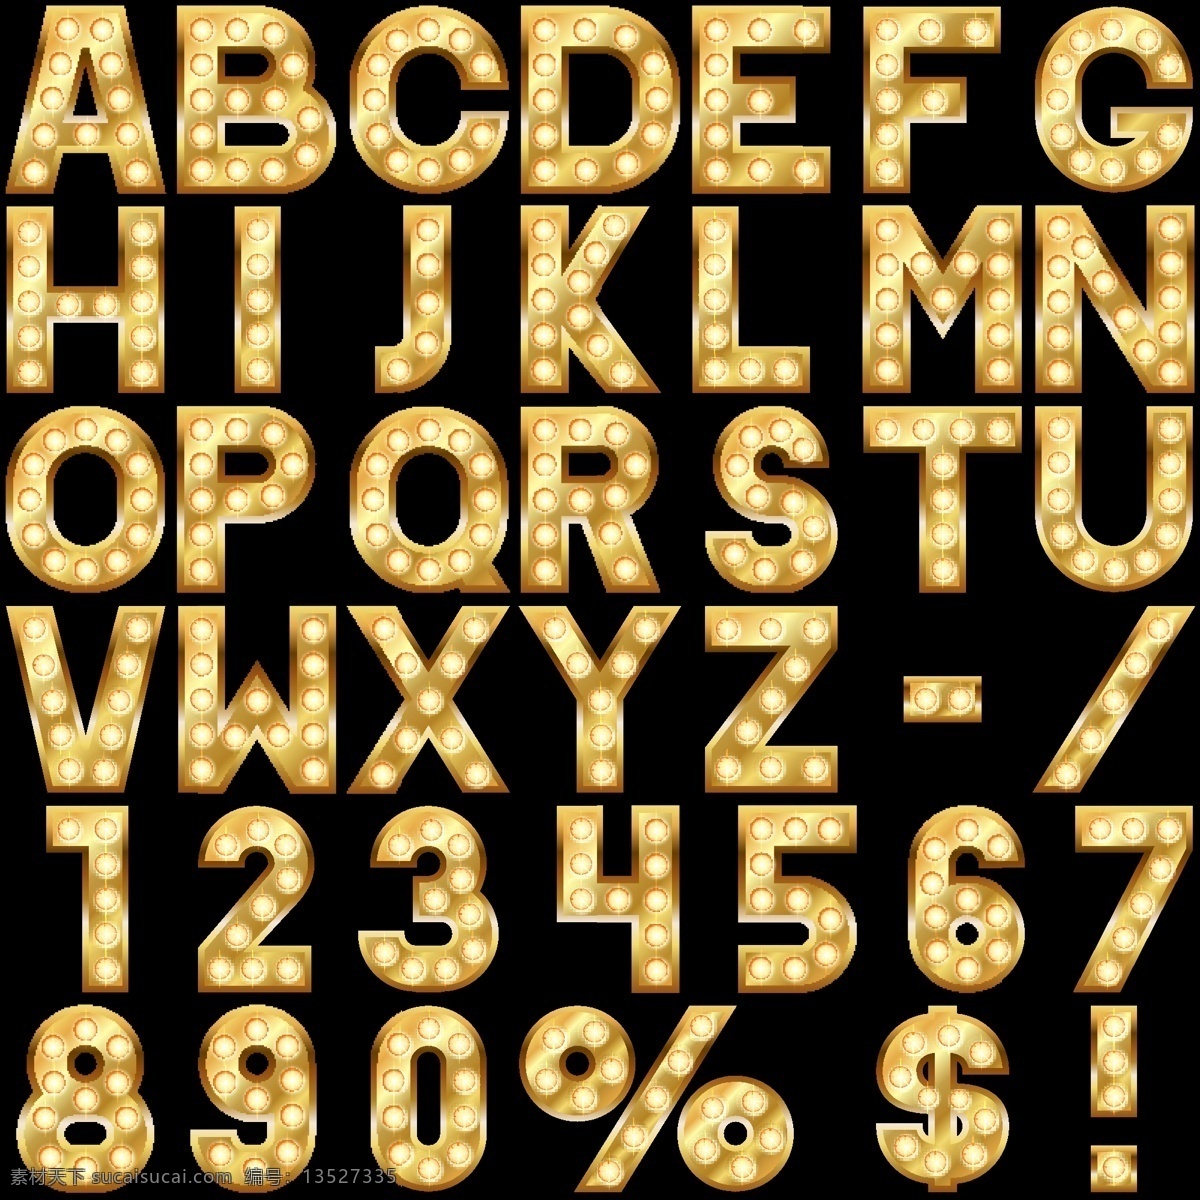 金属 字母 数字 矢量 模板下载 金属图案 金色 英语 艺术字体 书画文字 生活百科 矢量素材 黑色